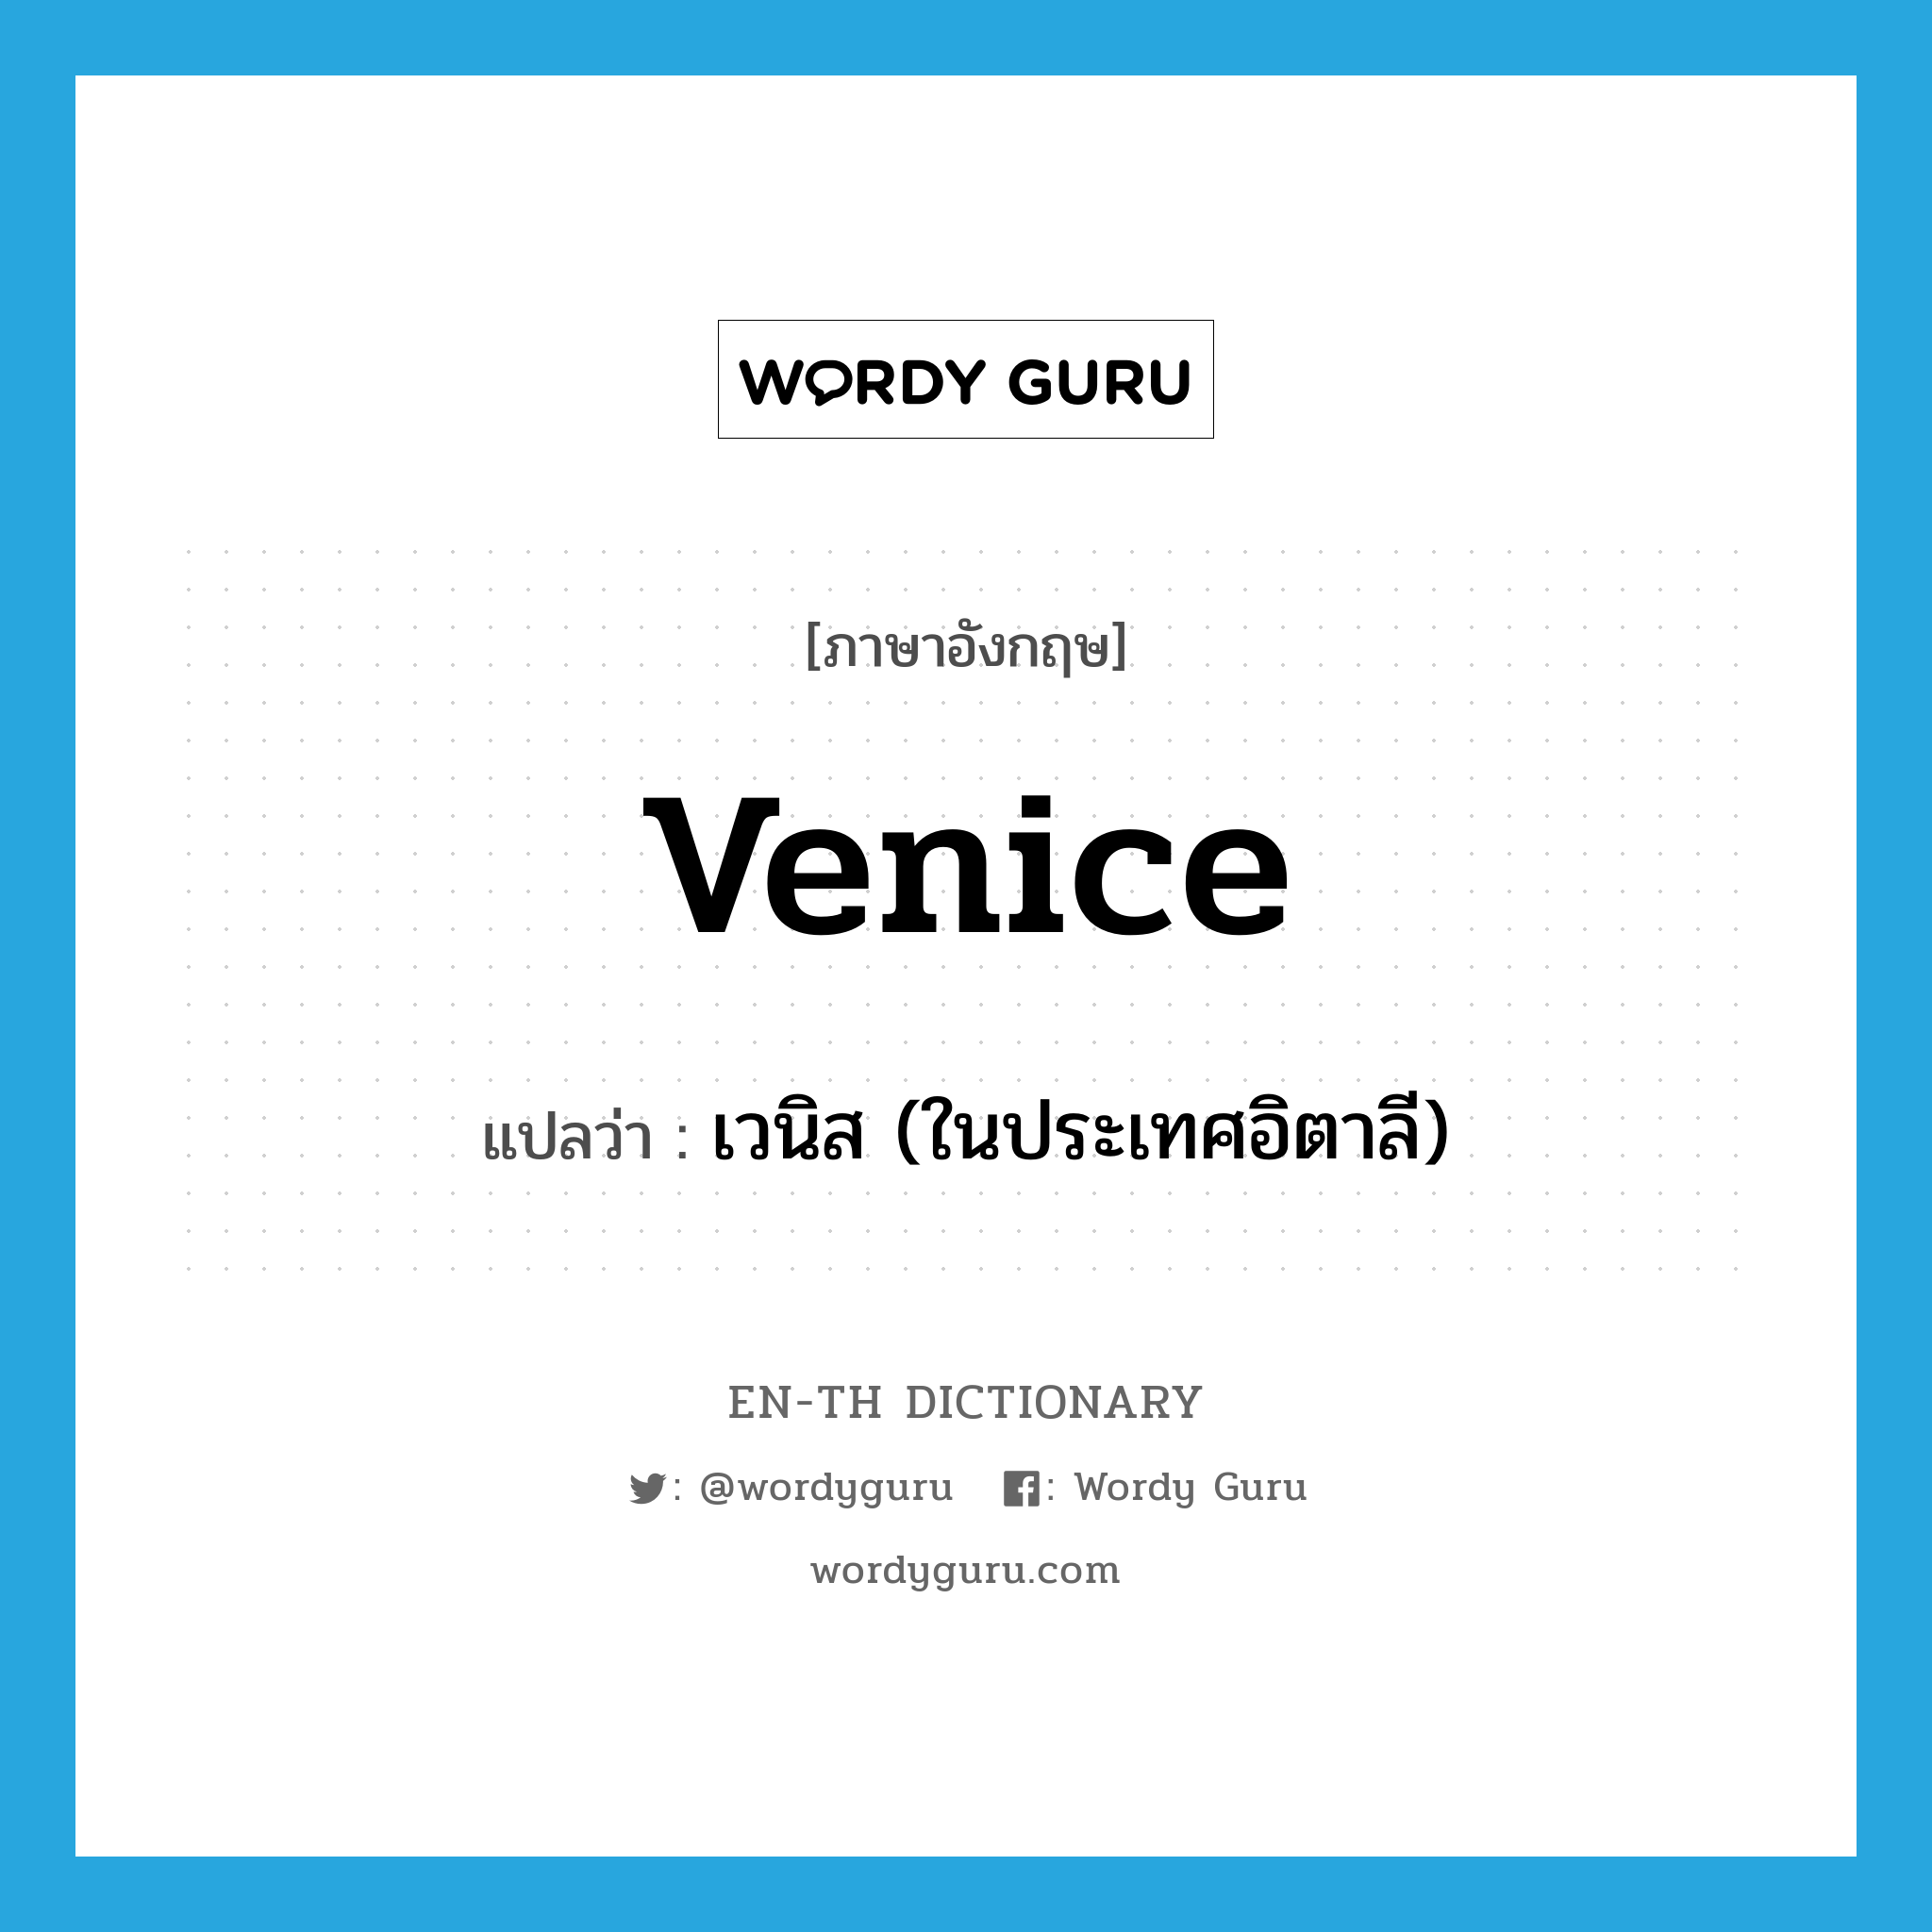 เวนิส (ในประเทศอิตาลี) ภาษาอังกฤษ?, คำศัพท์ภาษาอังกฤษ เวนิส (ในประเทศอิตาลี) แปลว่า Venice ประเภท N หมวด N